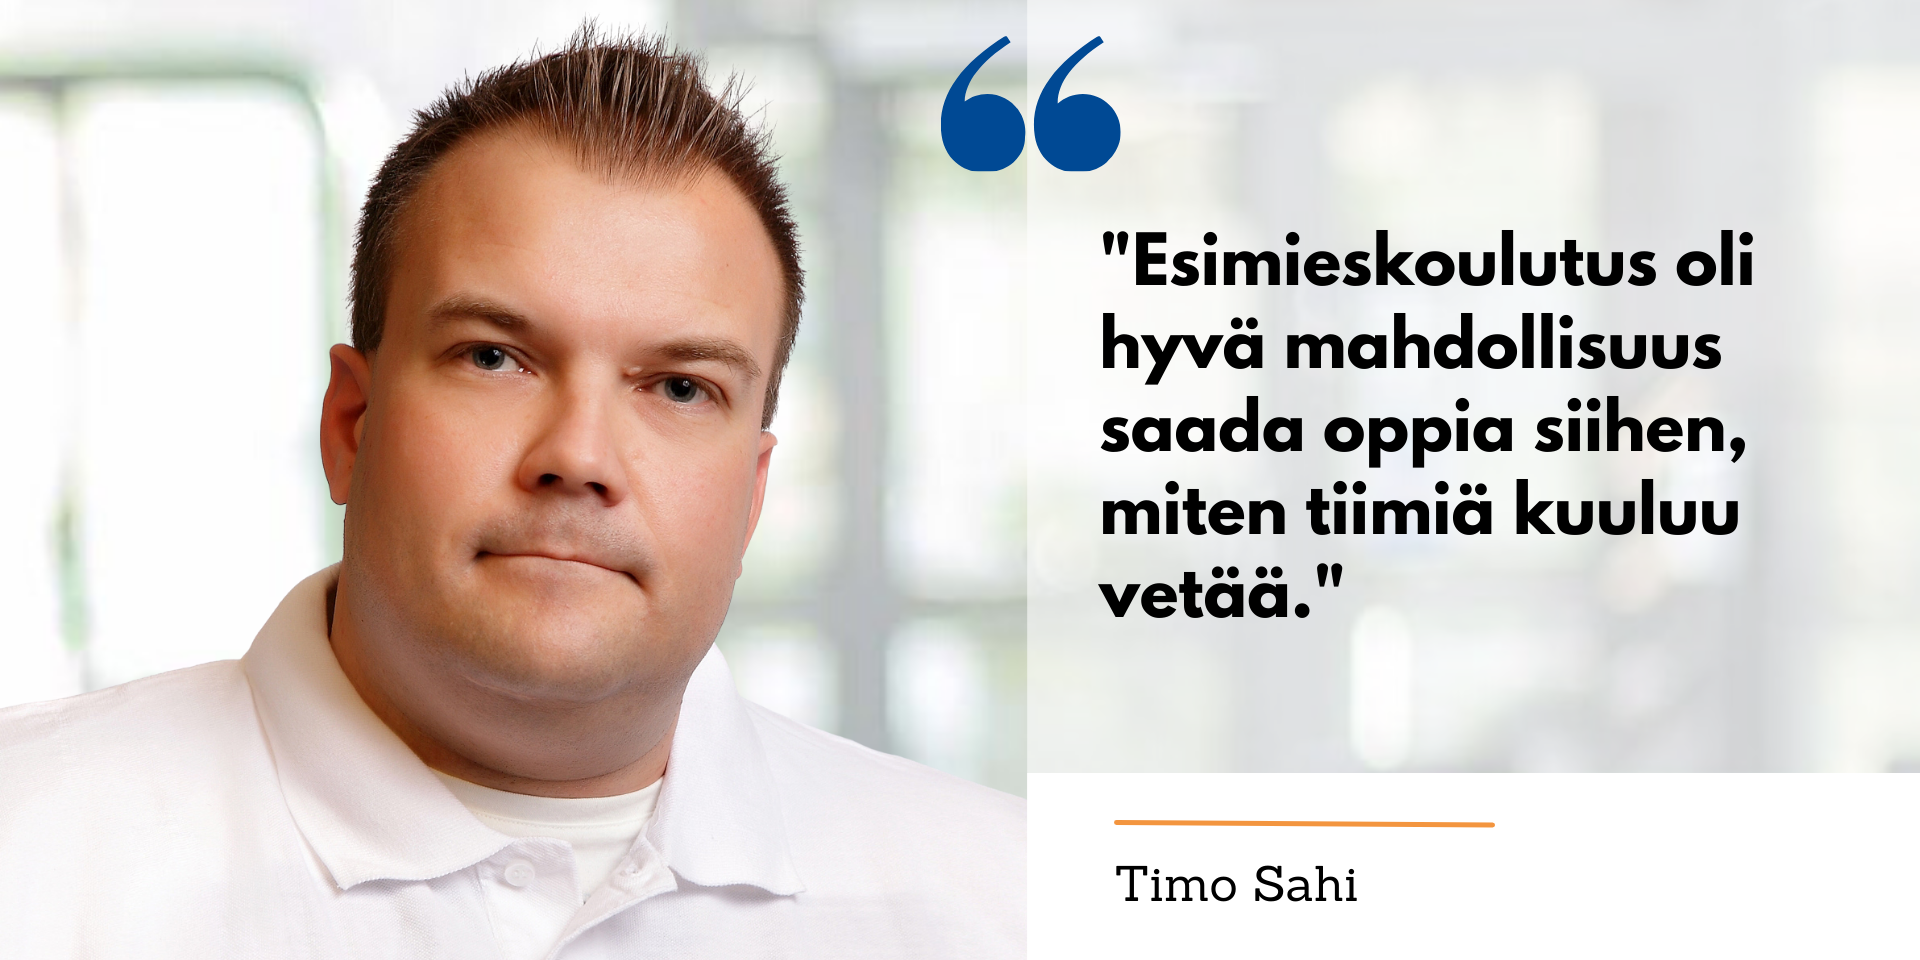 Timo Sahi Esimieskoulutuksen opiskelijatarinassa. Esimieskoulutus oli hyvä mahdollisuus saada oppia siihen, miten tiimiä kuuluu vetää.